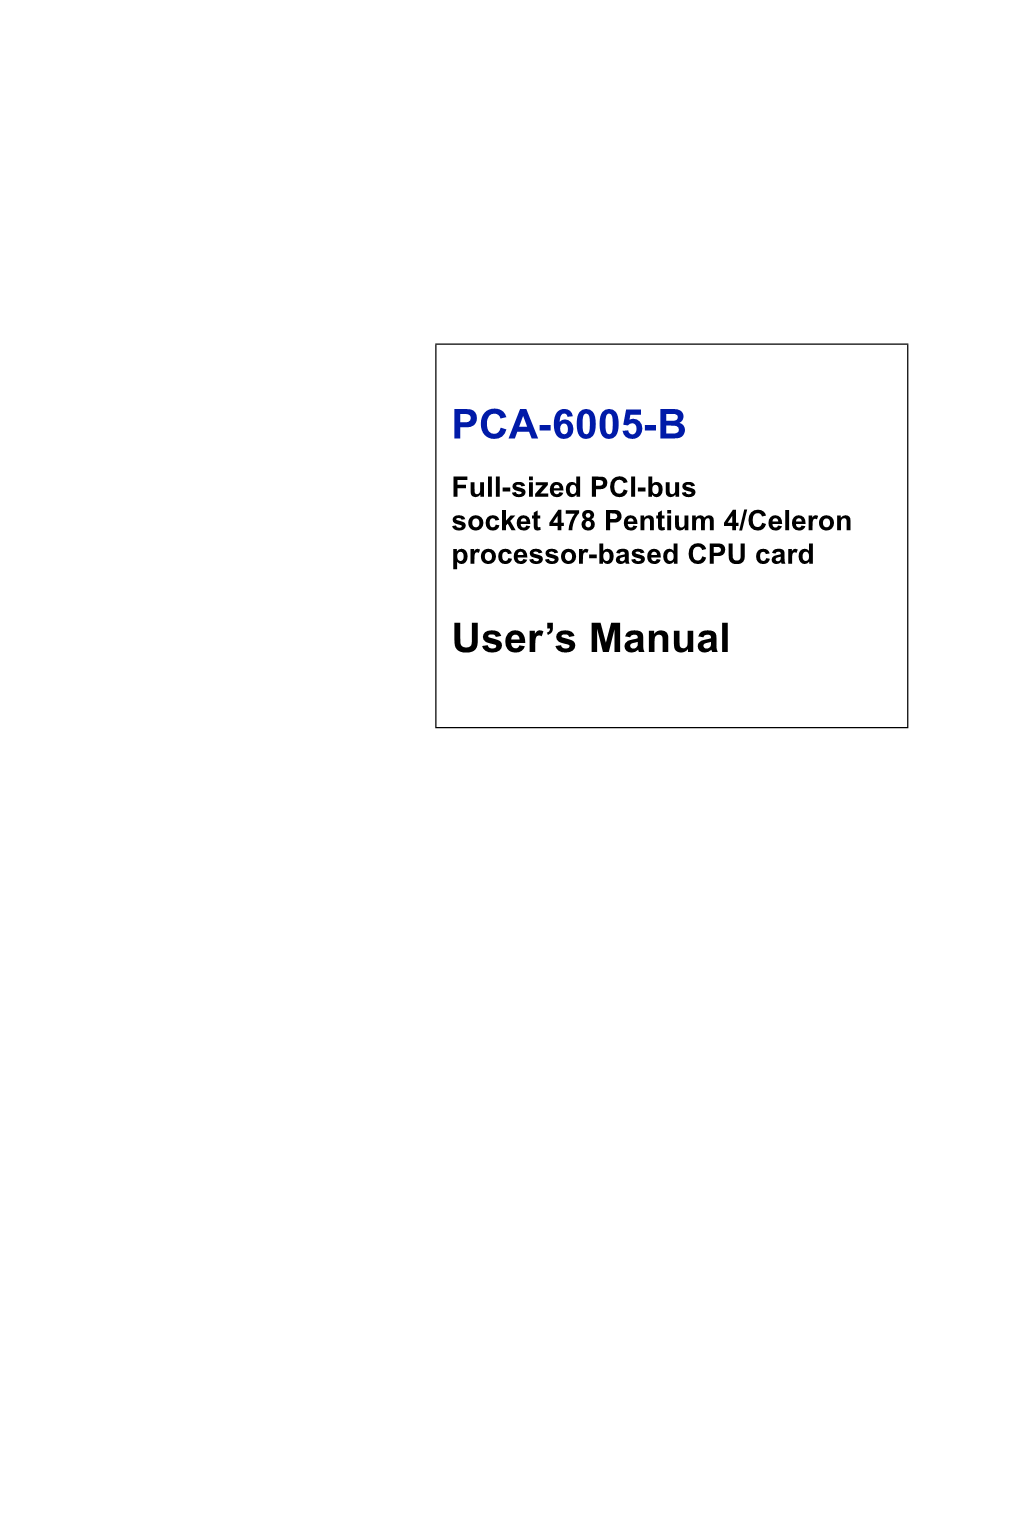 PCA-6005-B User's Manual